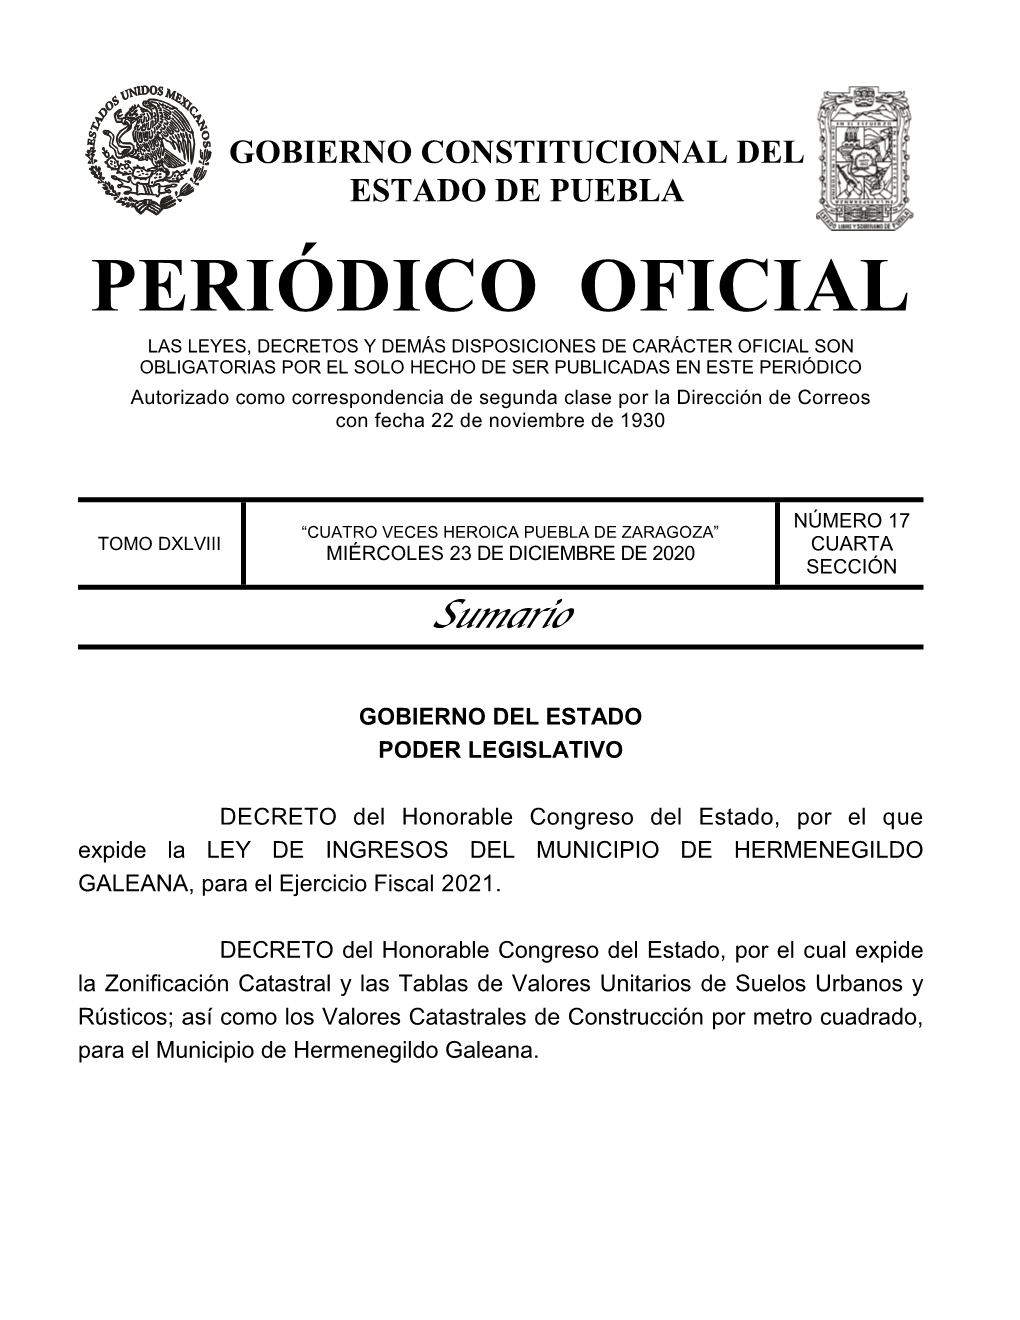 LEY DE INGRESOS DEL MUNICIPIO DE HERMENEGILDO GALEANA, Para El Ejercicio Fiscal 2021